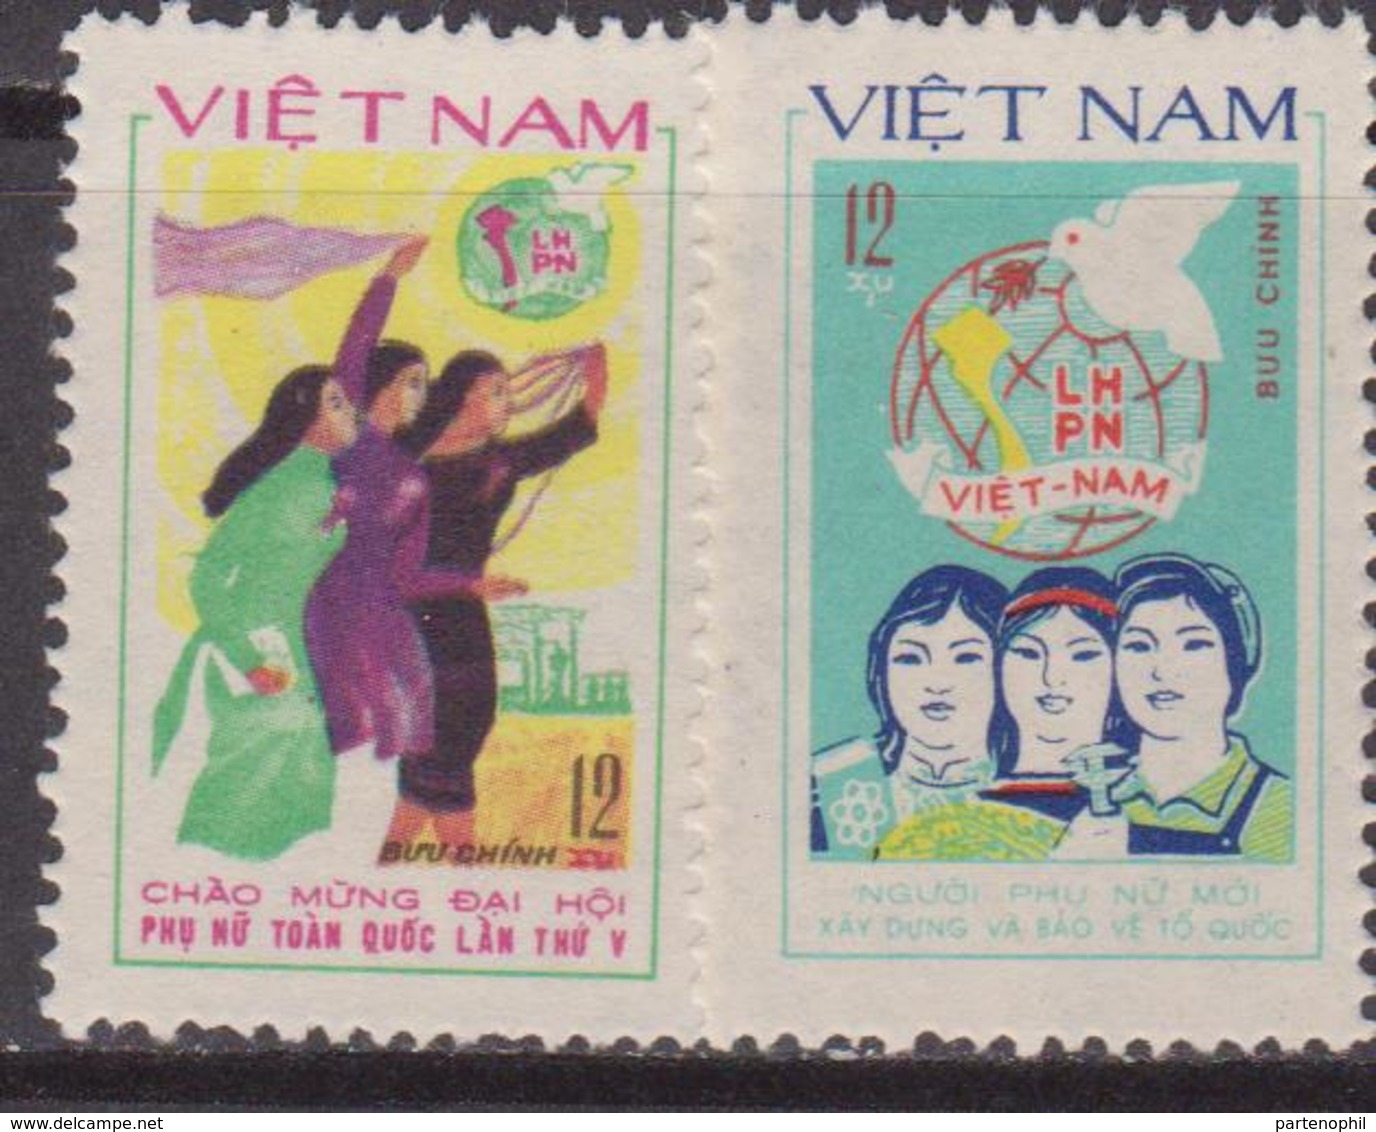 Vietnam 1982 LHPN Set MNH - Vietnam